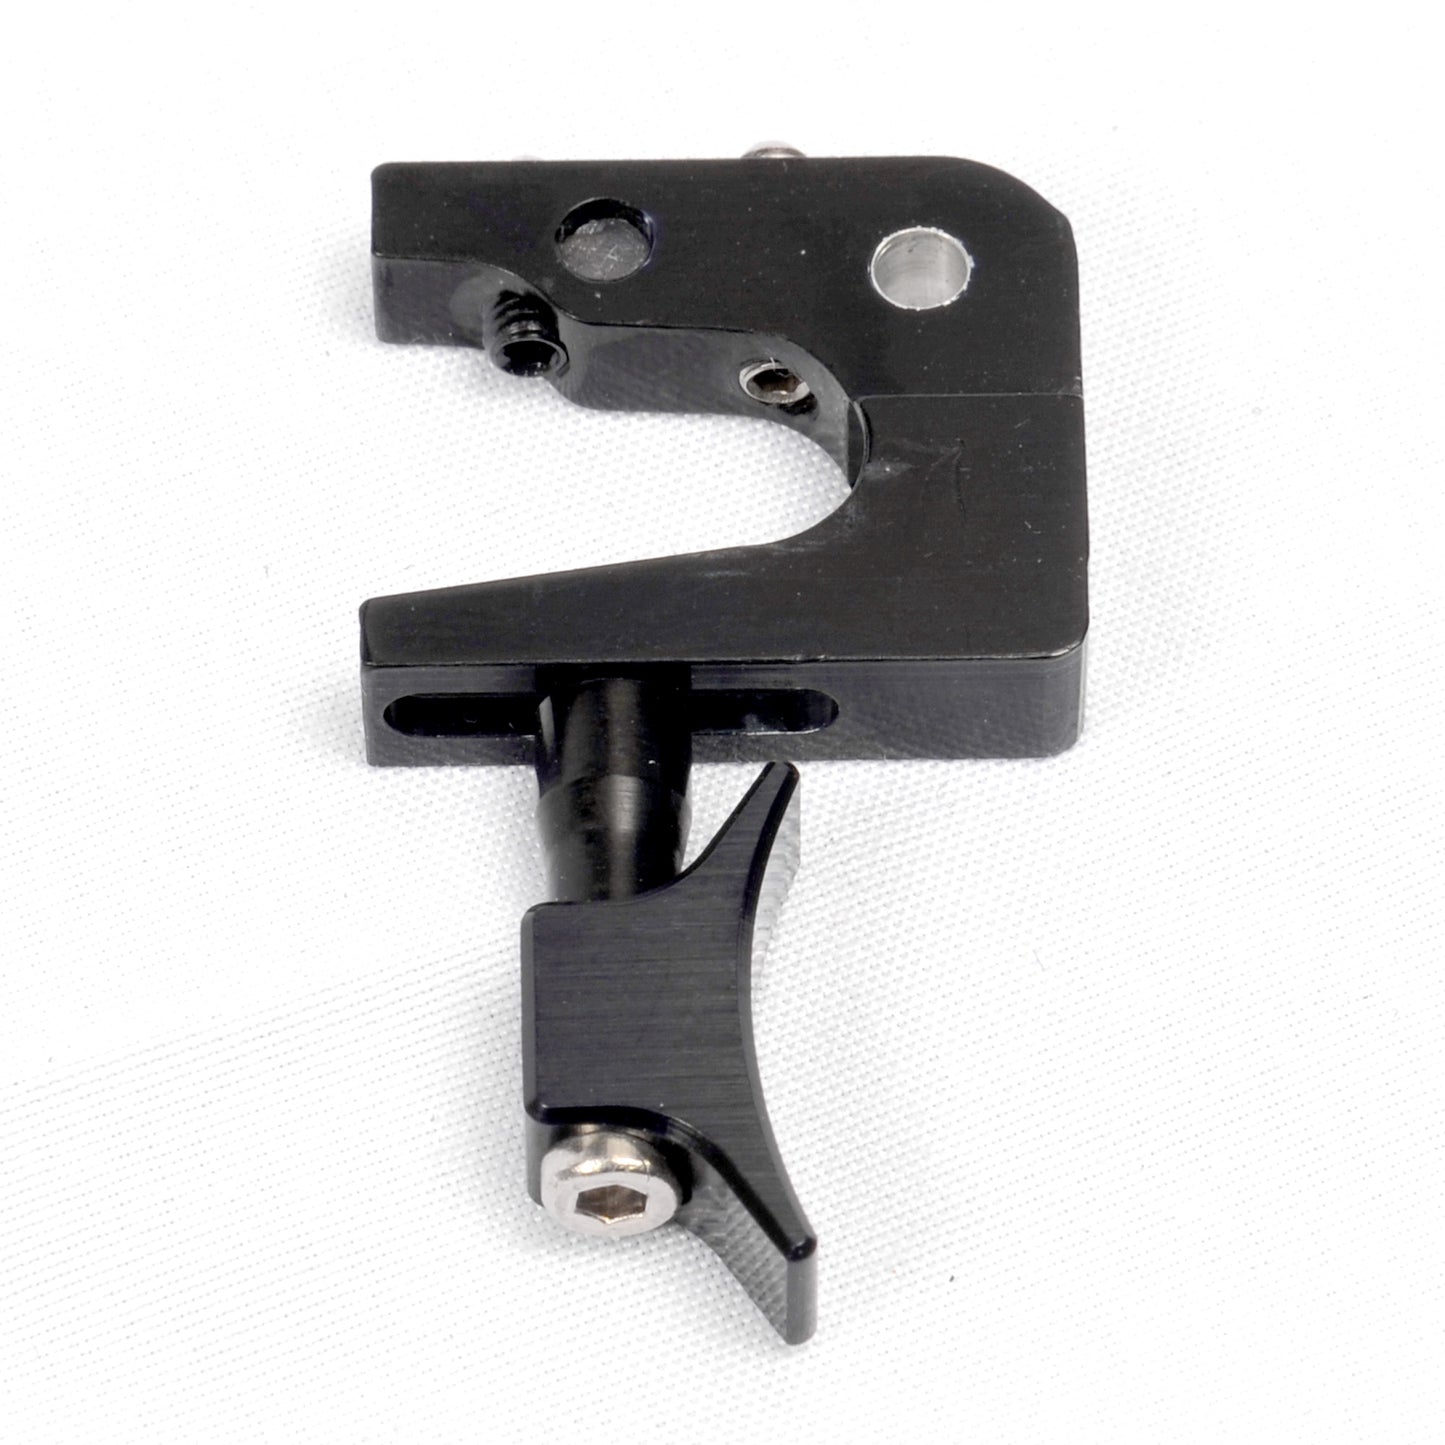 Theoben MK4 Adjustable Trigger. 3.0mm pin